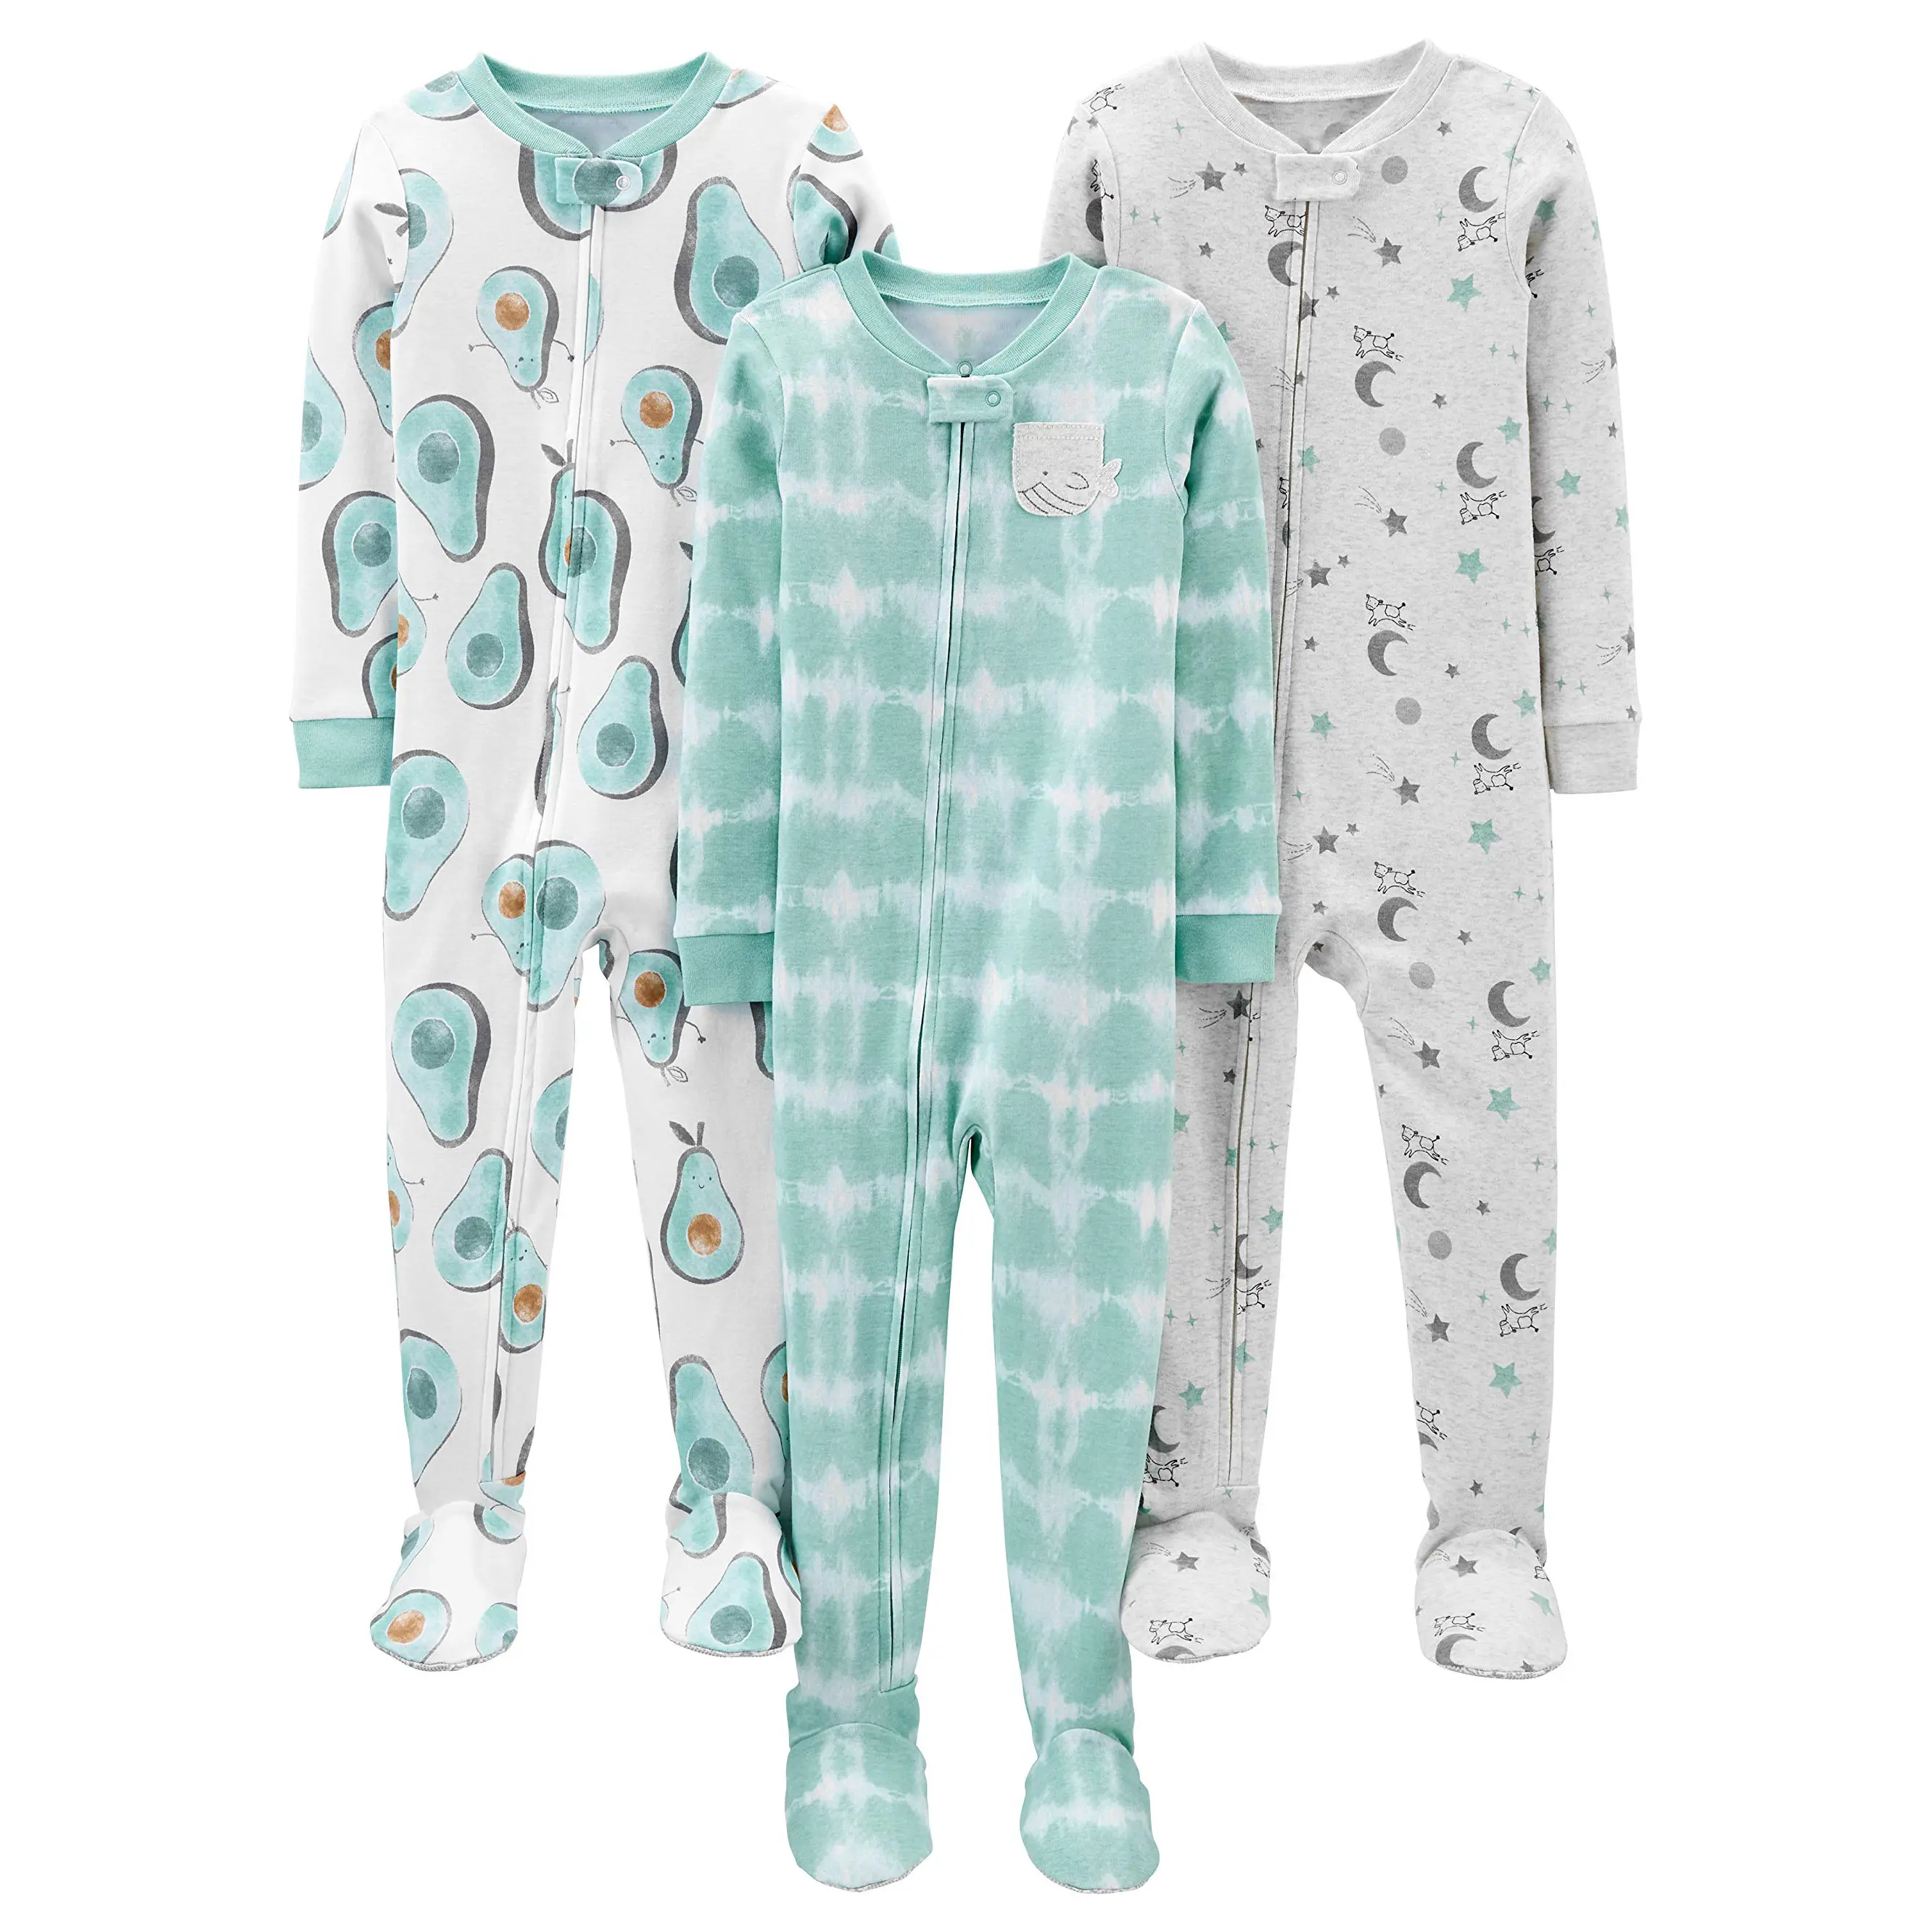 Toddlers and Baby Boys Snug-Fit Pijama de algodão, Pack de 3